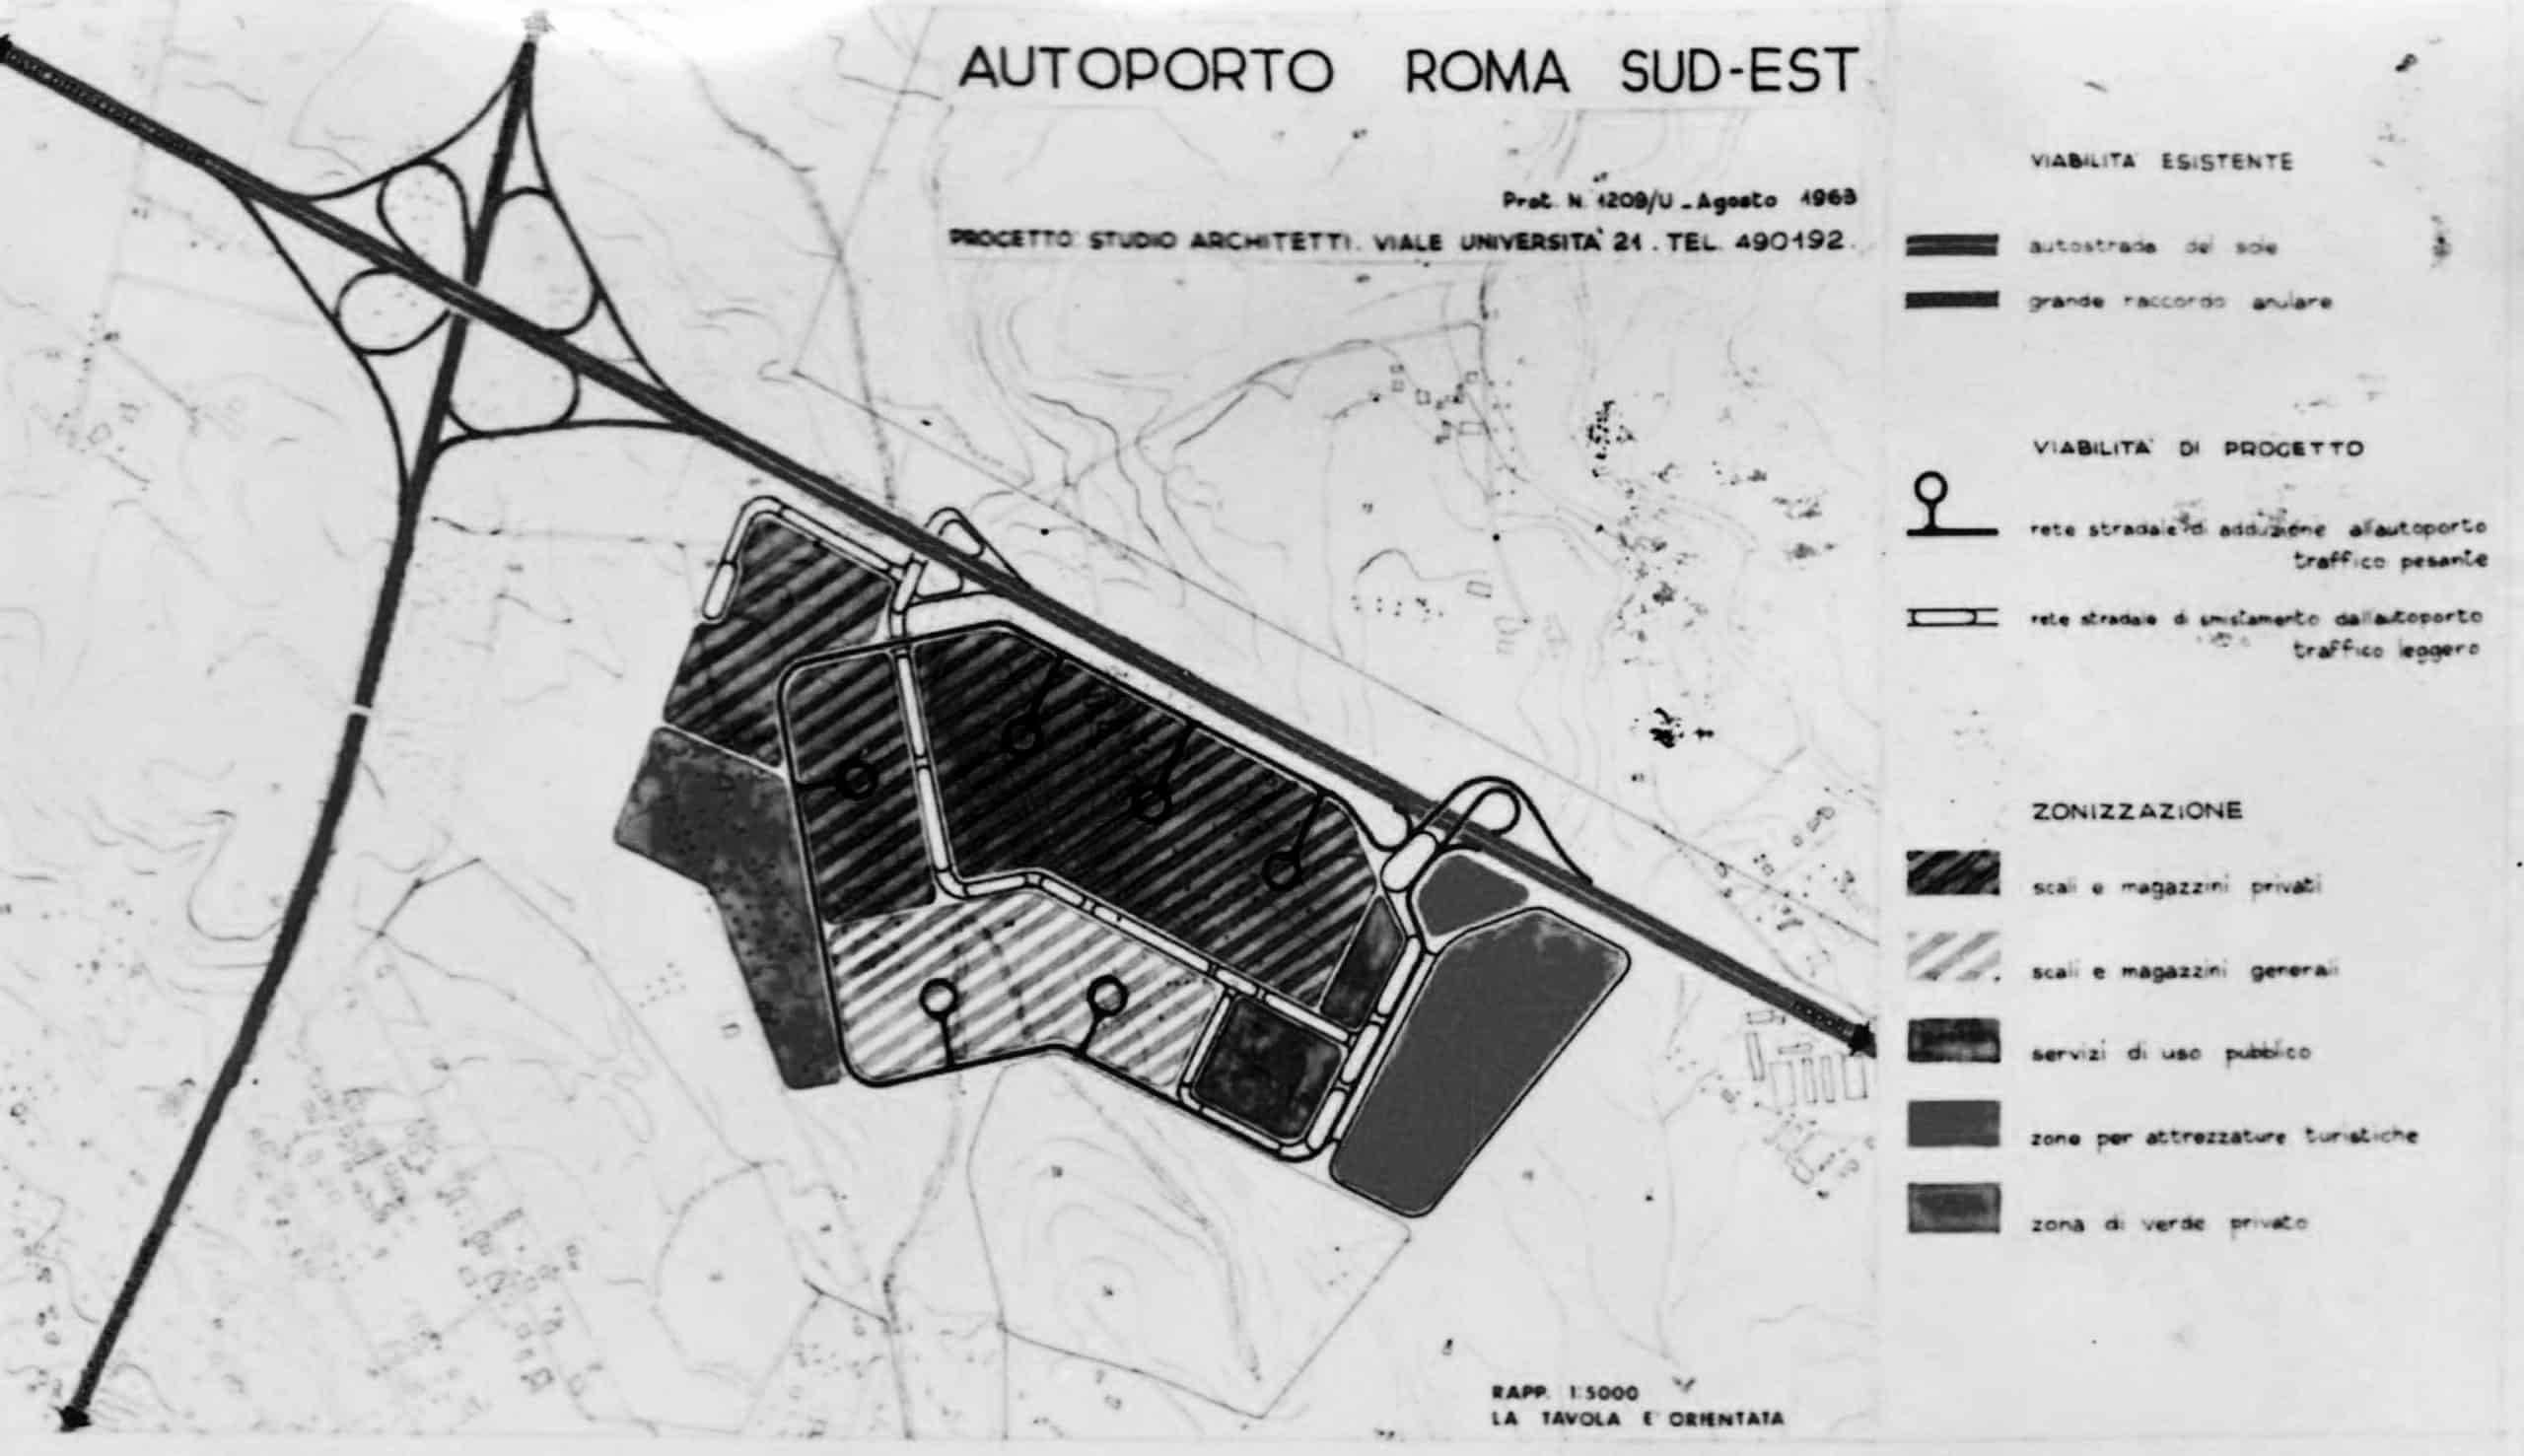 5 - Progetto planovolumetrico dell’autoporto Roma Sud-Est; con Studio Architetti - Planimetria generale con zonizzazione